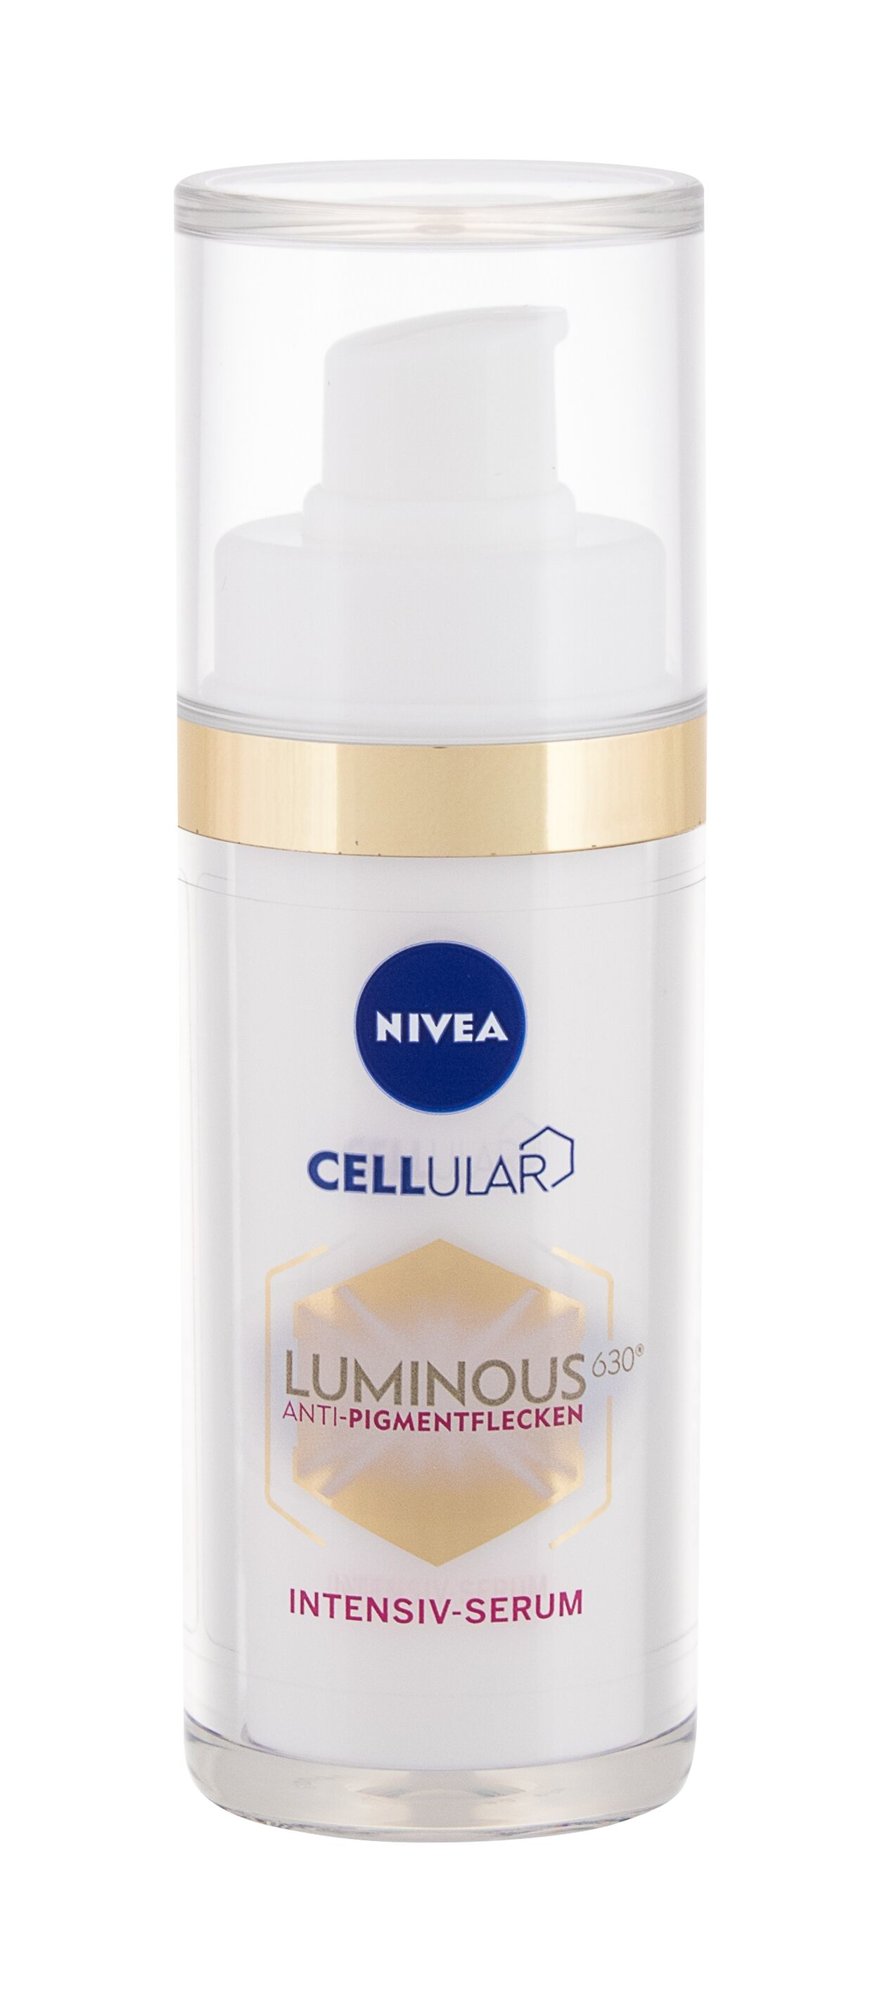 Nivea Cellular Luminous 630 Antispot Veido serumas